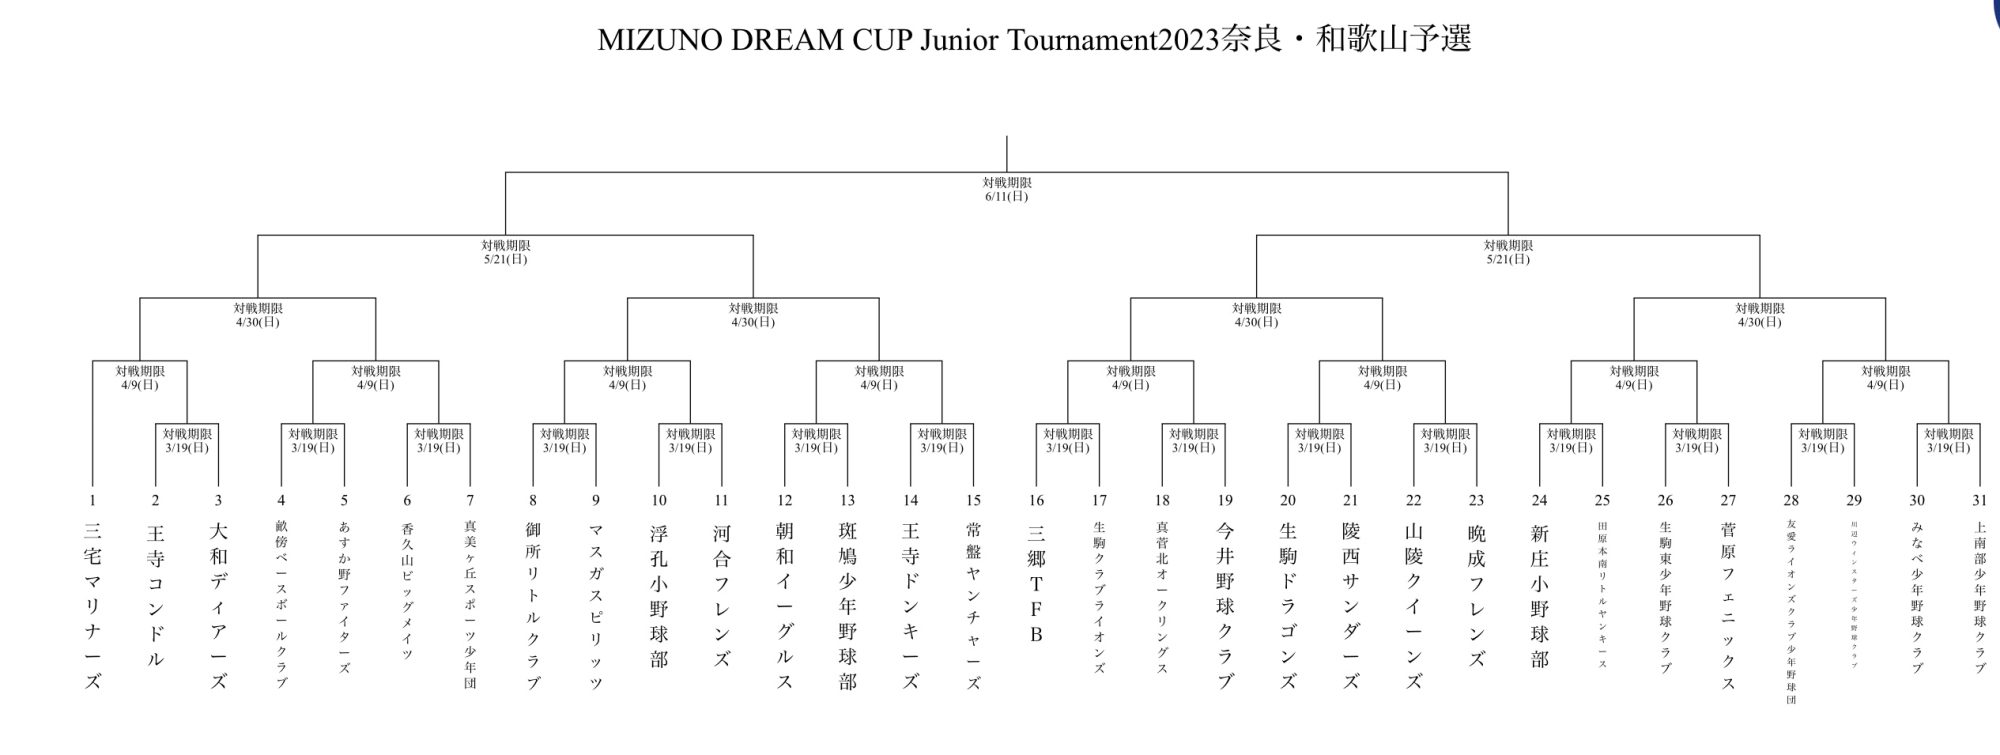 【Aチーム】公式試合(ミズノカップ1戦目)vs菅原フェニックスさん|2023.3.19(日)